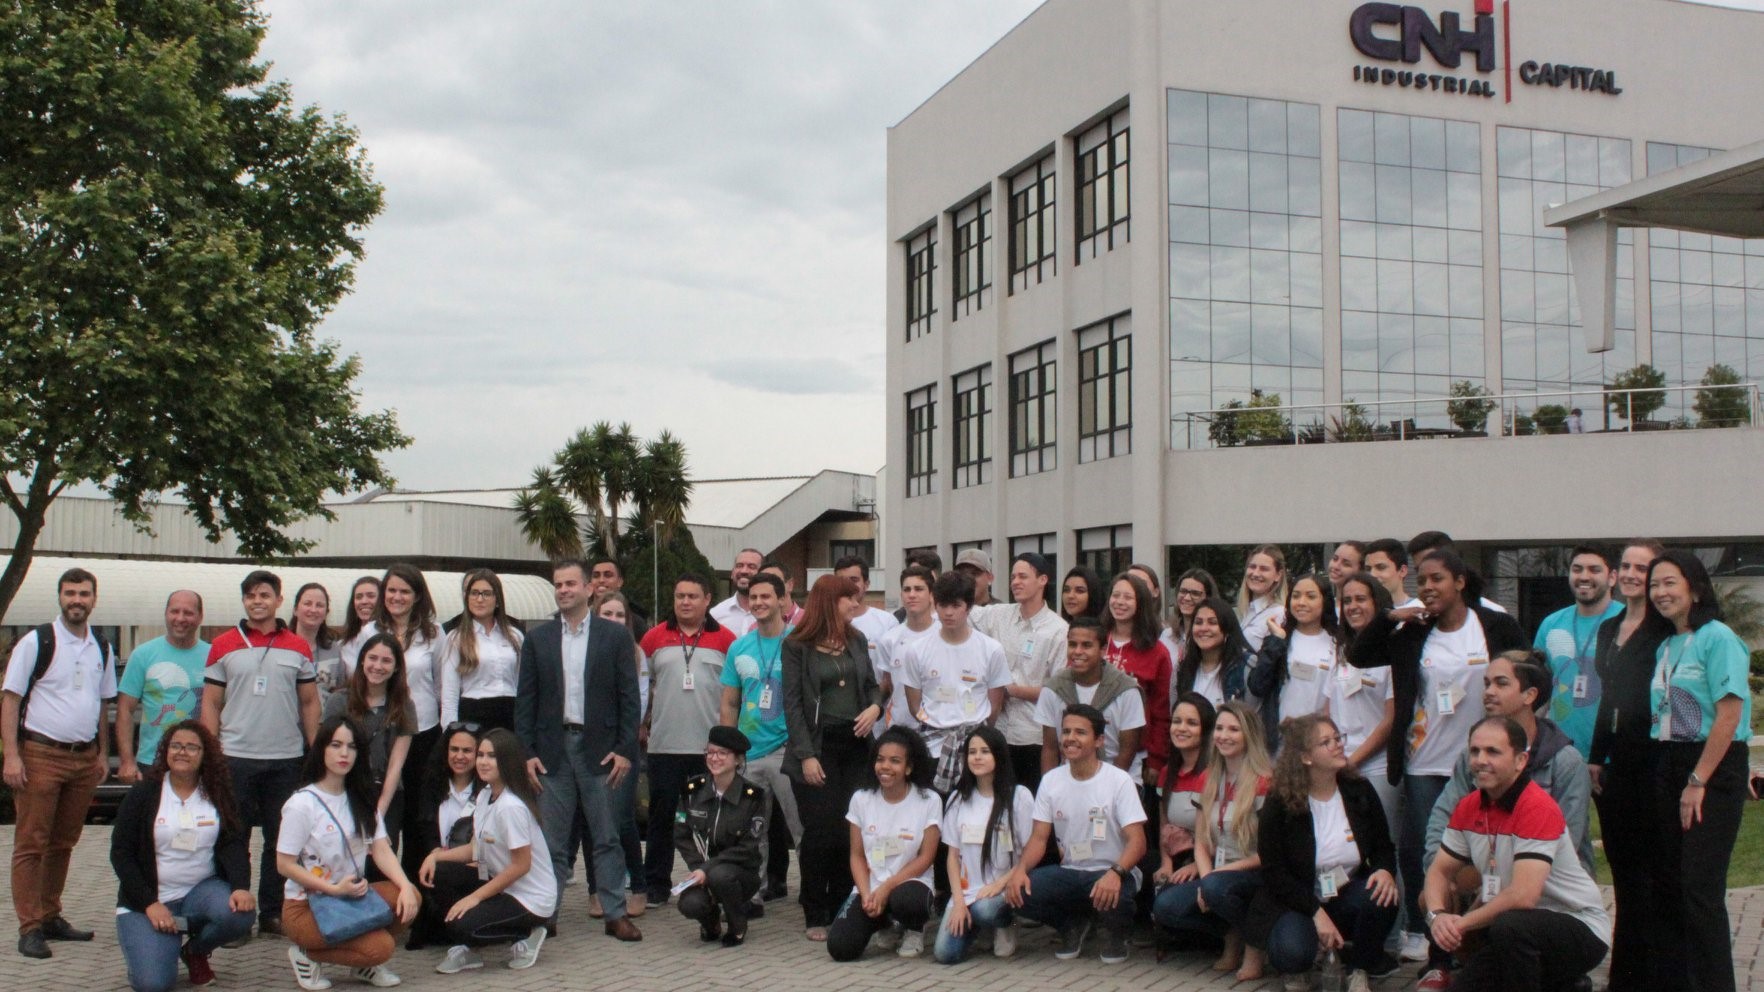 Banco CNH Industrial e New Holland promovem projeto de desenvolvimento pessoal e profissional para adolescentes